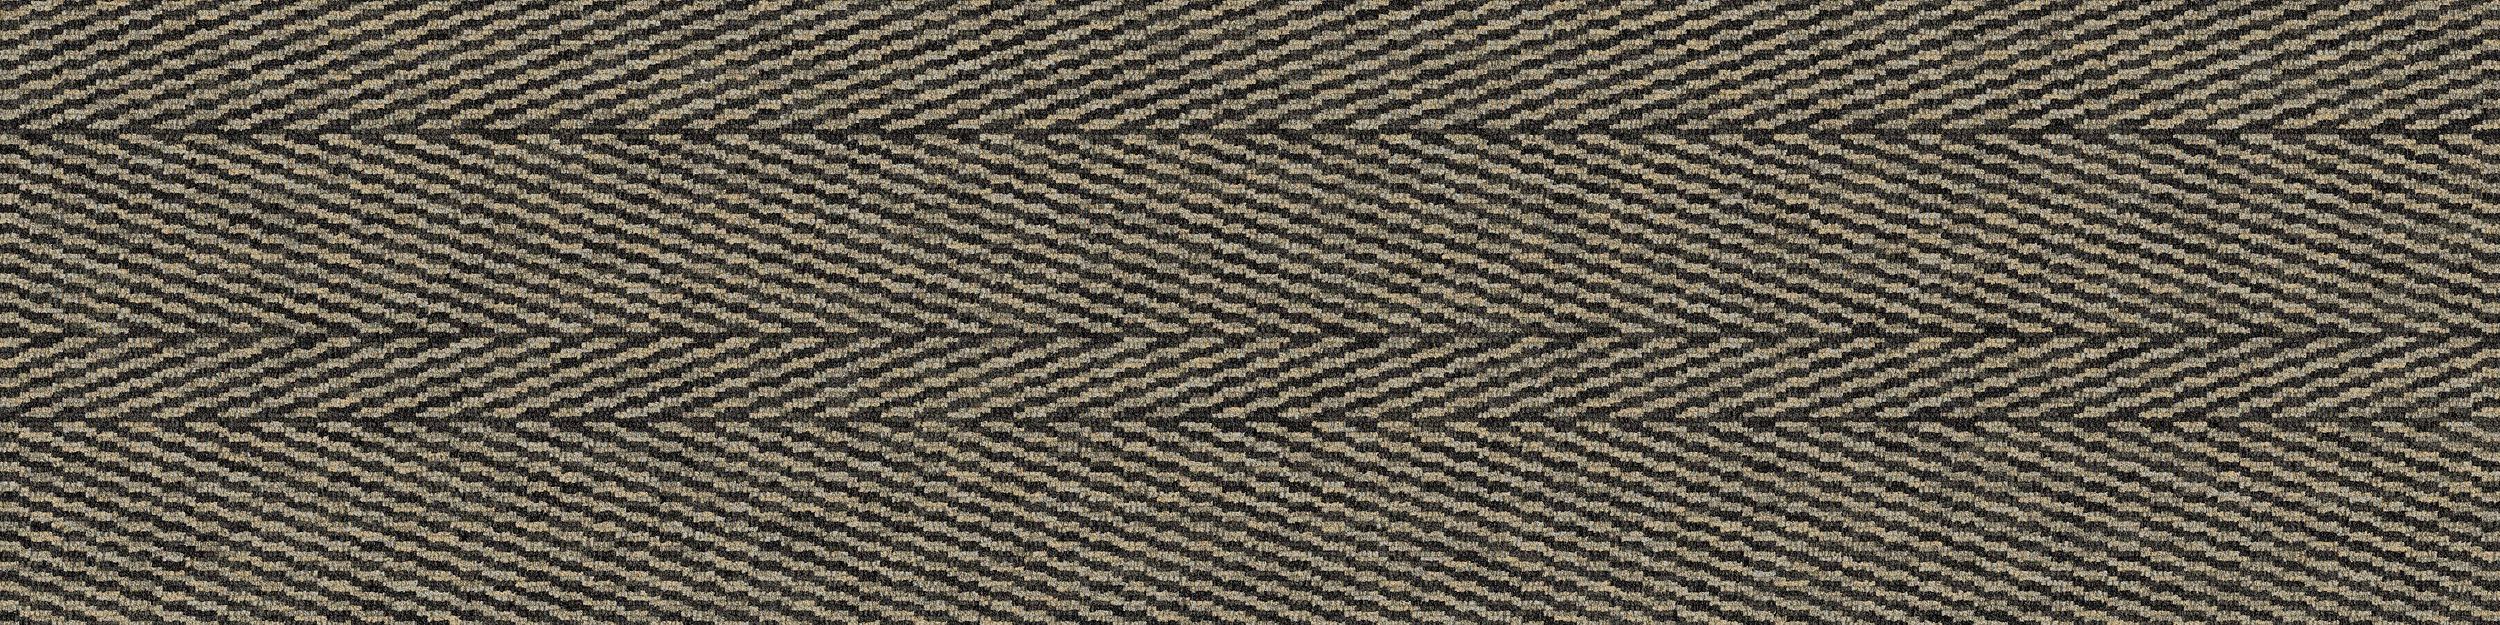 Stitch In Time Carpet Tile In Natural Stitch imagen número 2